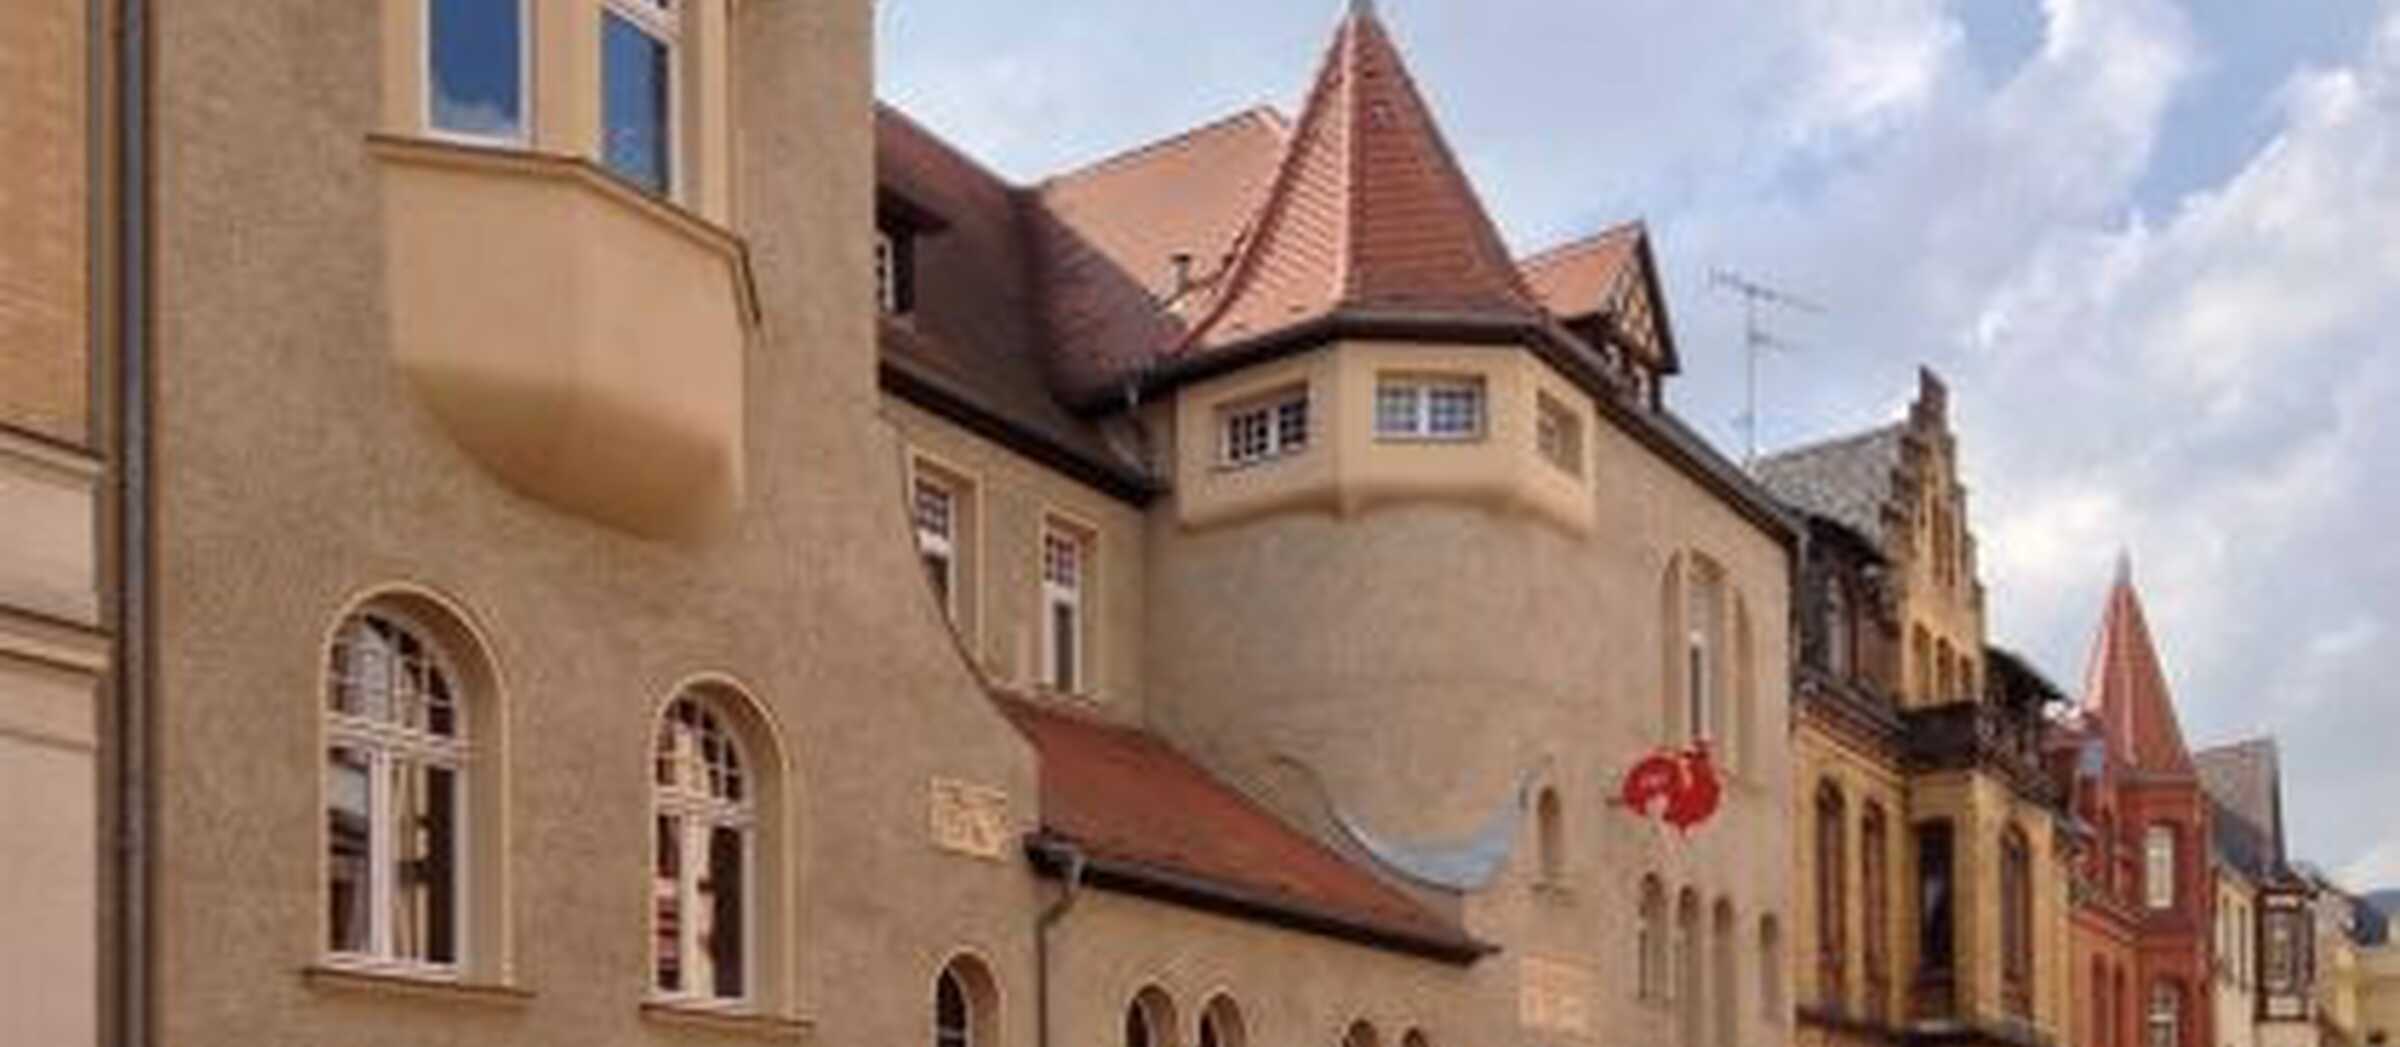 Felicitas-von-Selmenitz-Haus